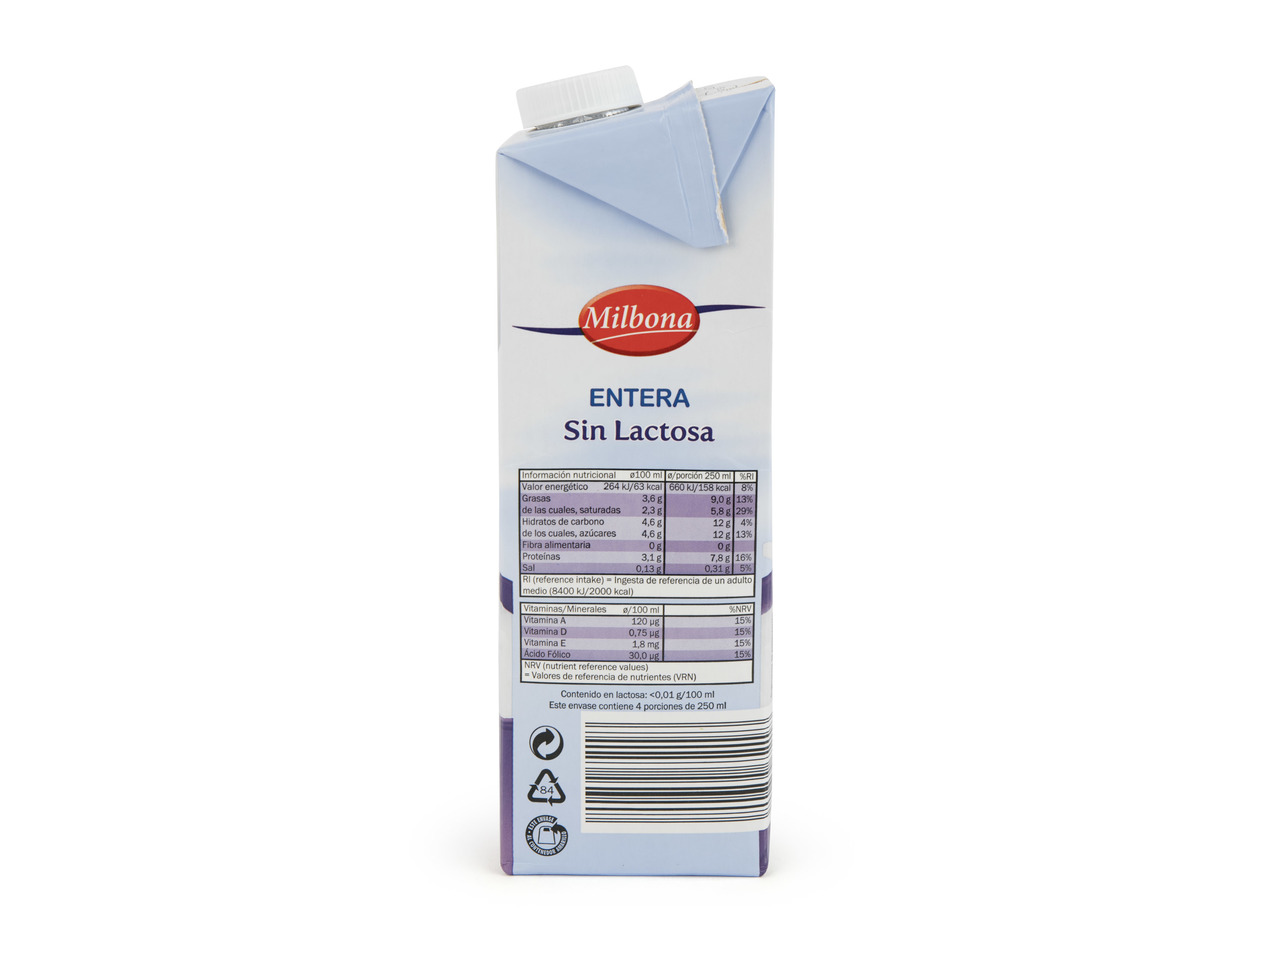 "Milbona" Leche sin lactosa entera